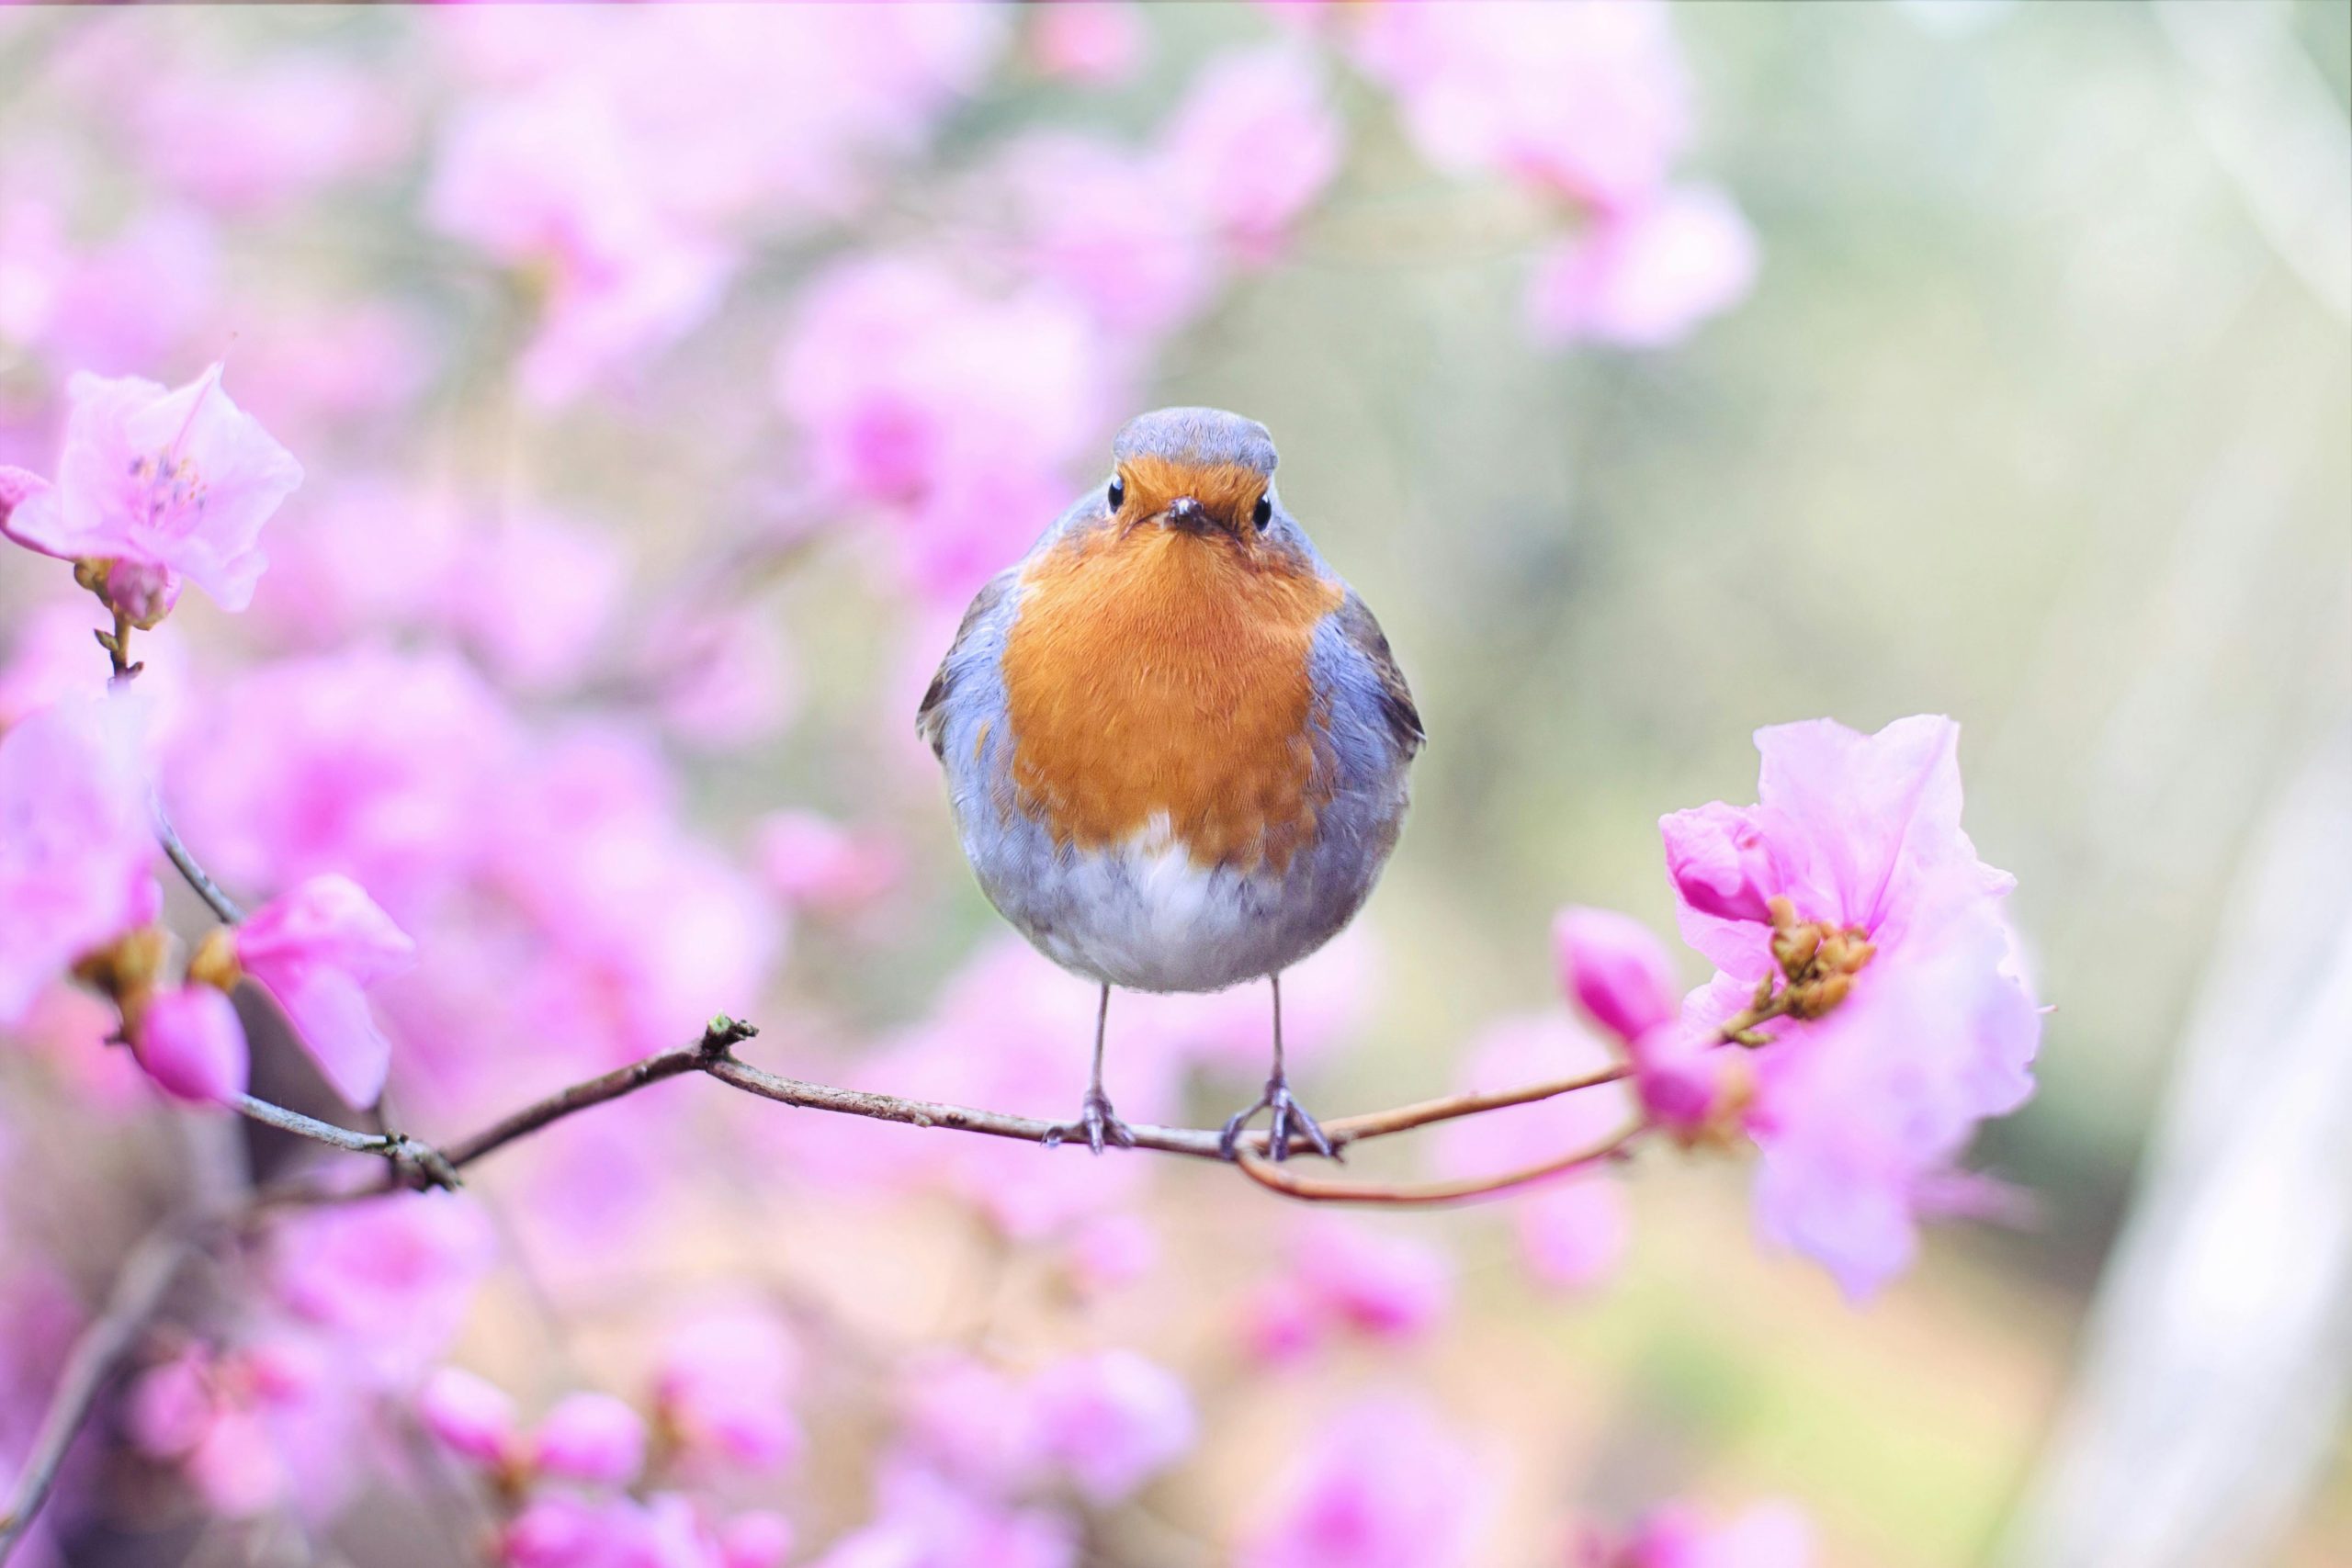 A robin in a spring garden